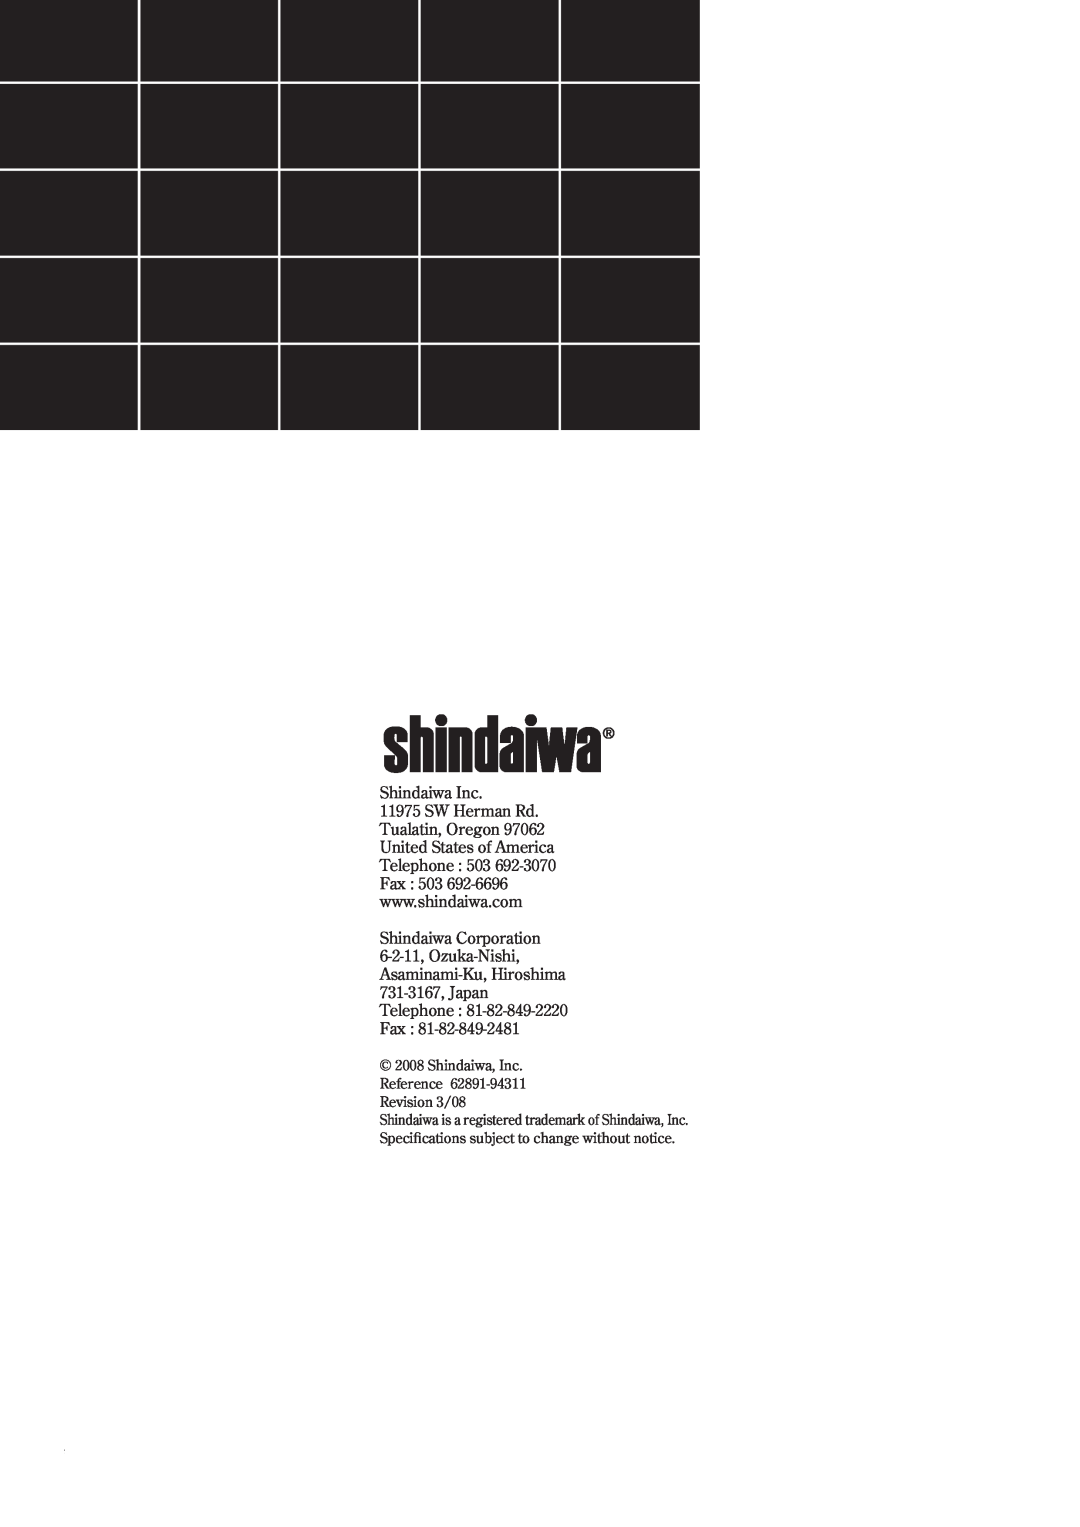 Shindaiwa 62891-94311 manual Shindaiwa Inc, Shindaiwa Corporation 6-2-11, Ozuka-Nishi Asaminami-Ku, Hiroshima, FR24 